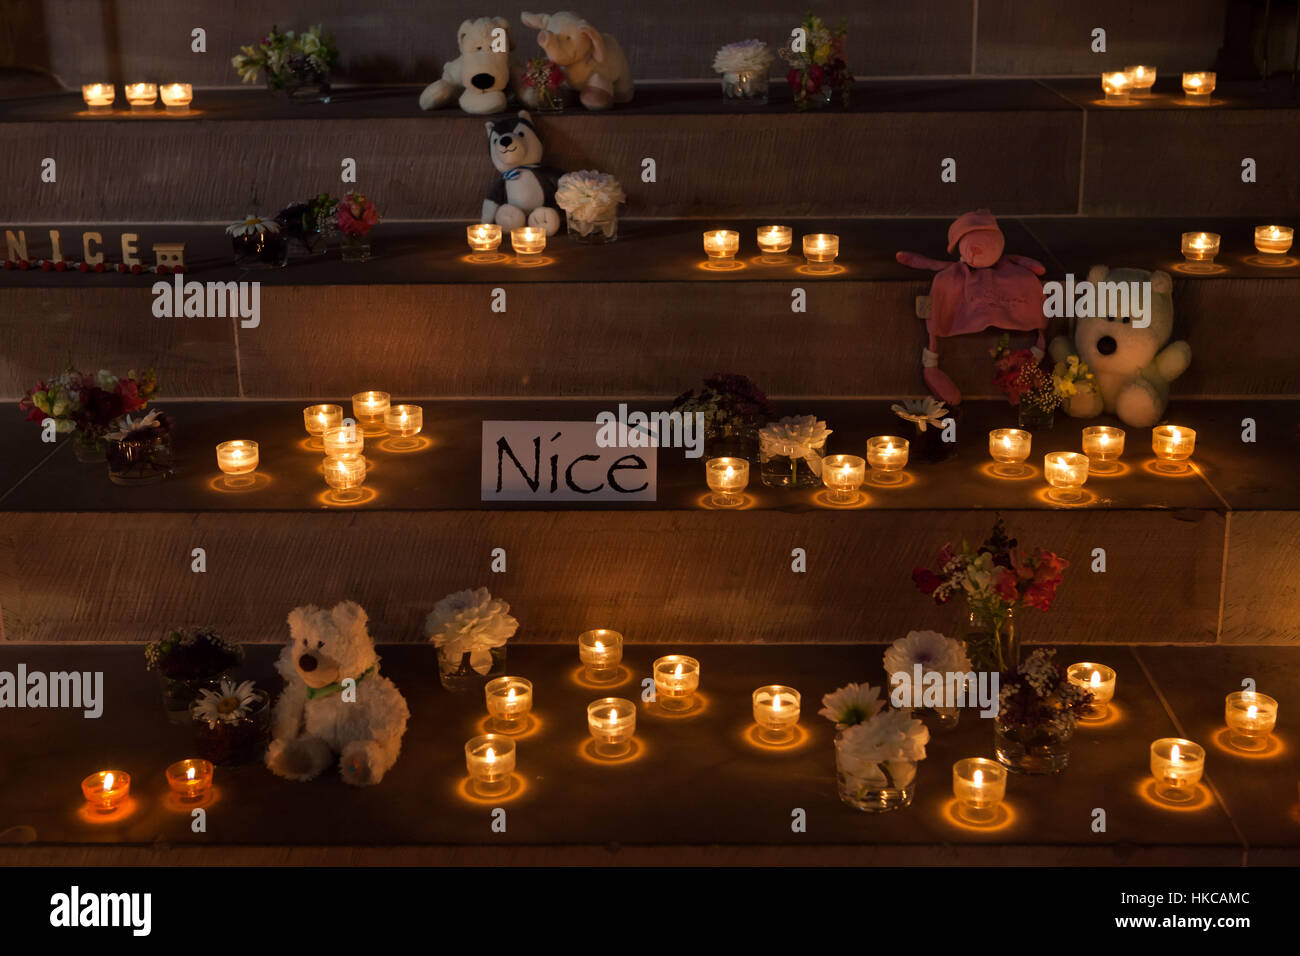 Le candele e i giocattoli nella cattedrale di Strasburgo (la cattedrale di Notre-dame de Strasbourg) a Strasburgo, Alsazia, Francia, per rendere omaggio alle vittime del carrello attacco a Nizza nel mese di luglio 2016. Foto Stock